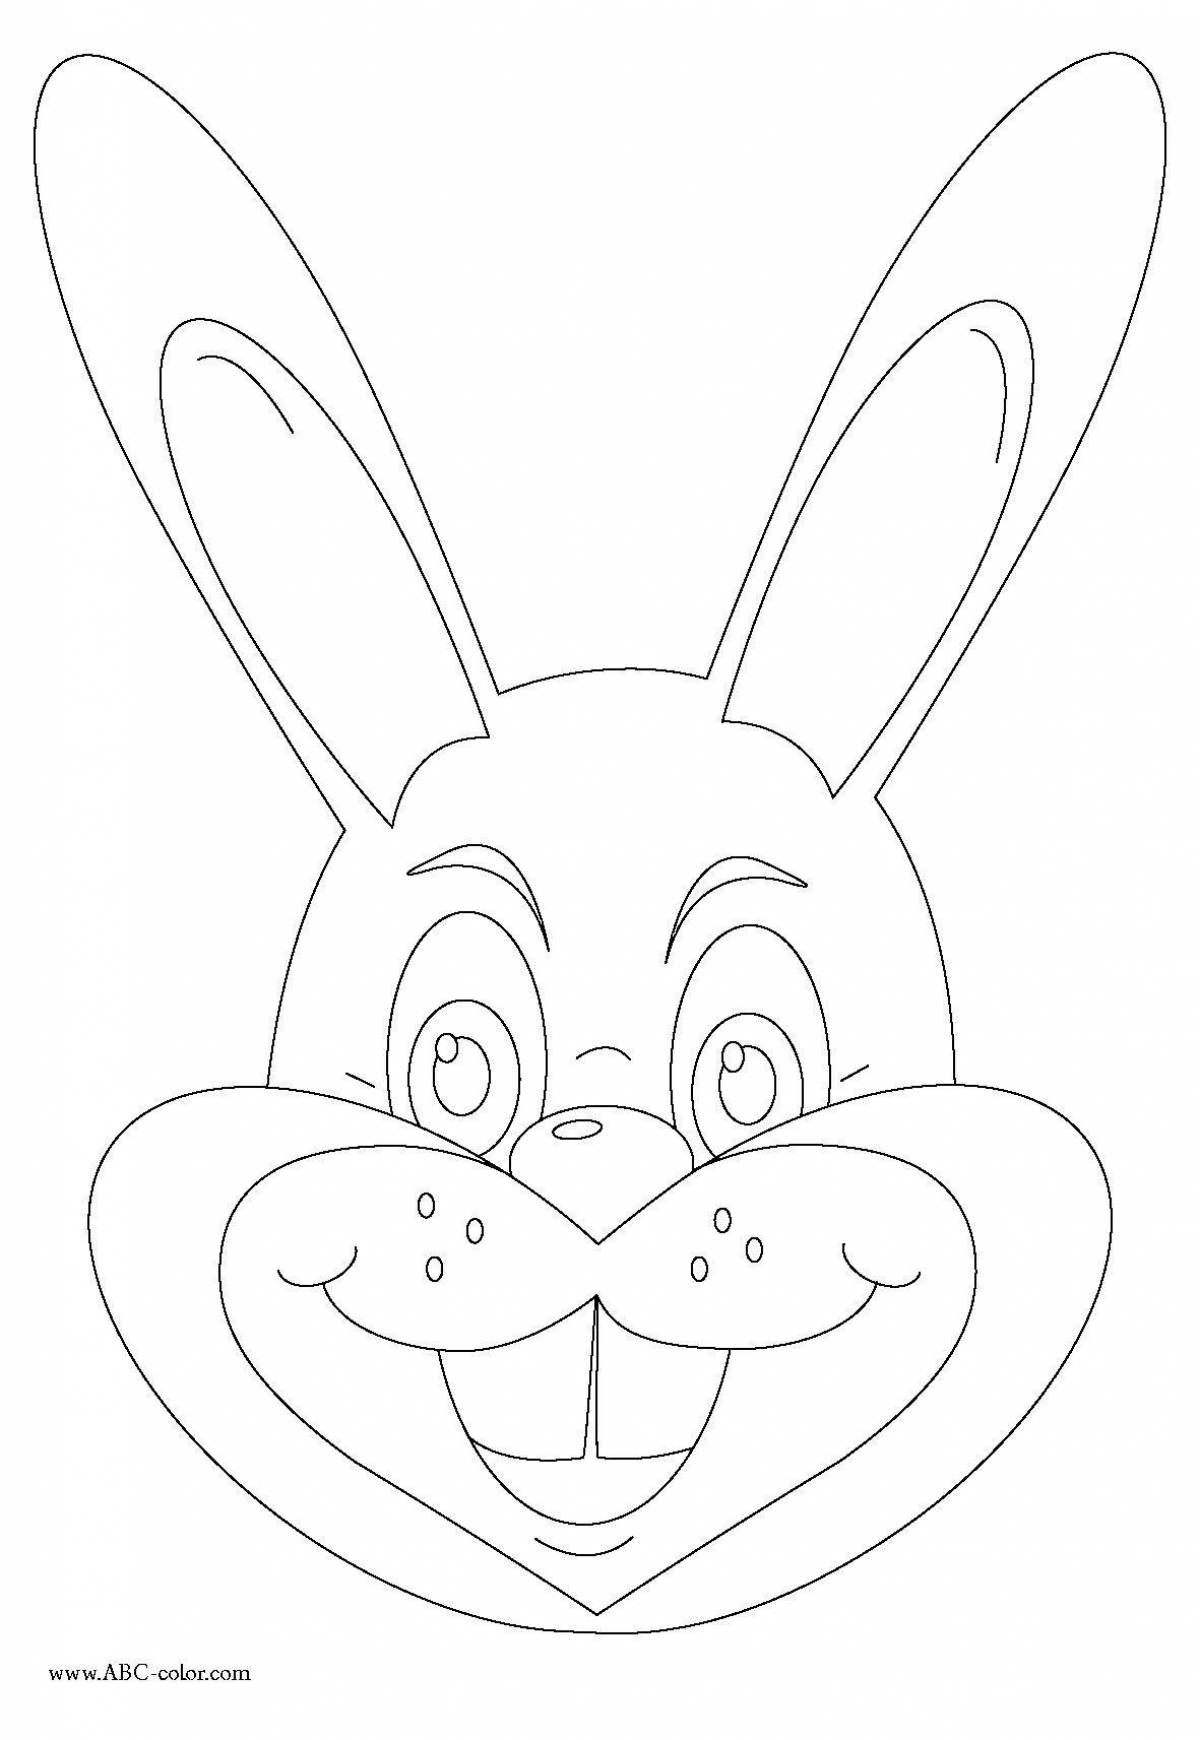 Coloring head of a joyful hare